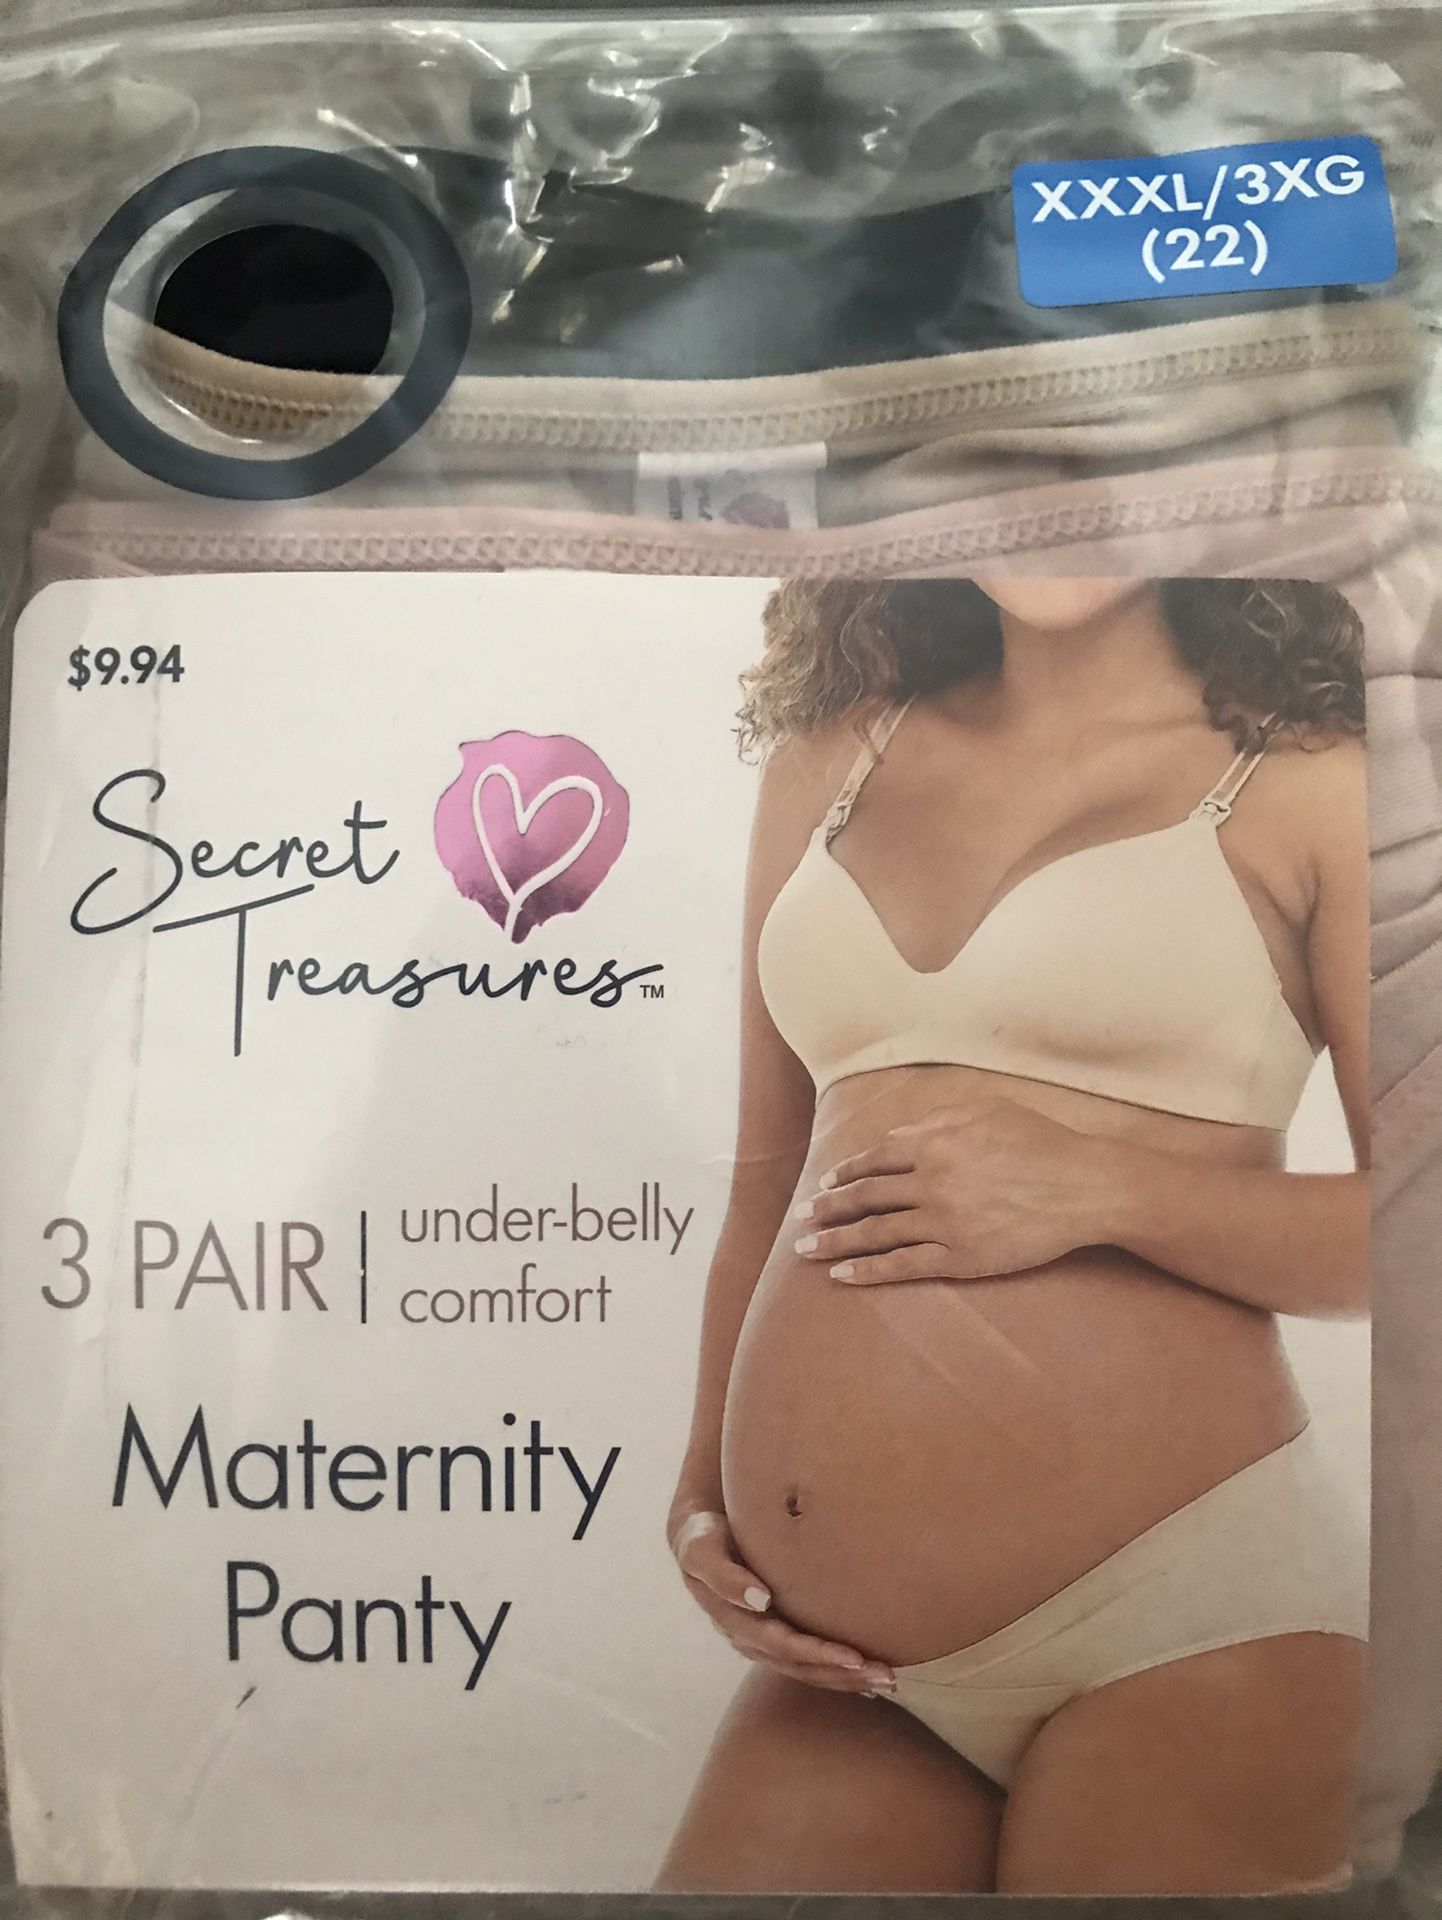 New Secret treasures Maternity Panties for Sale in San Antonio, TX